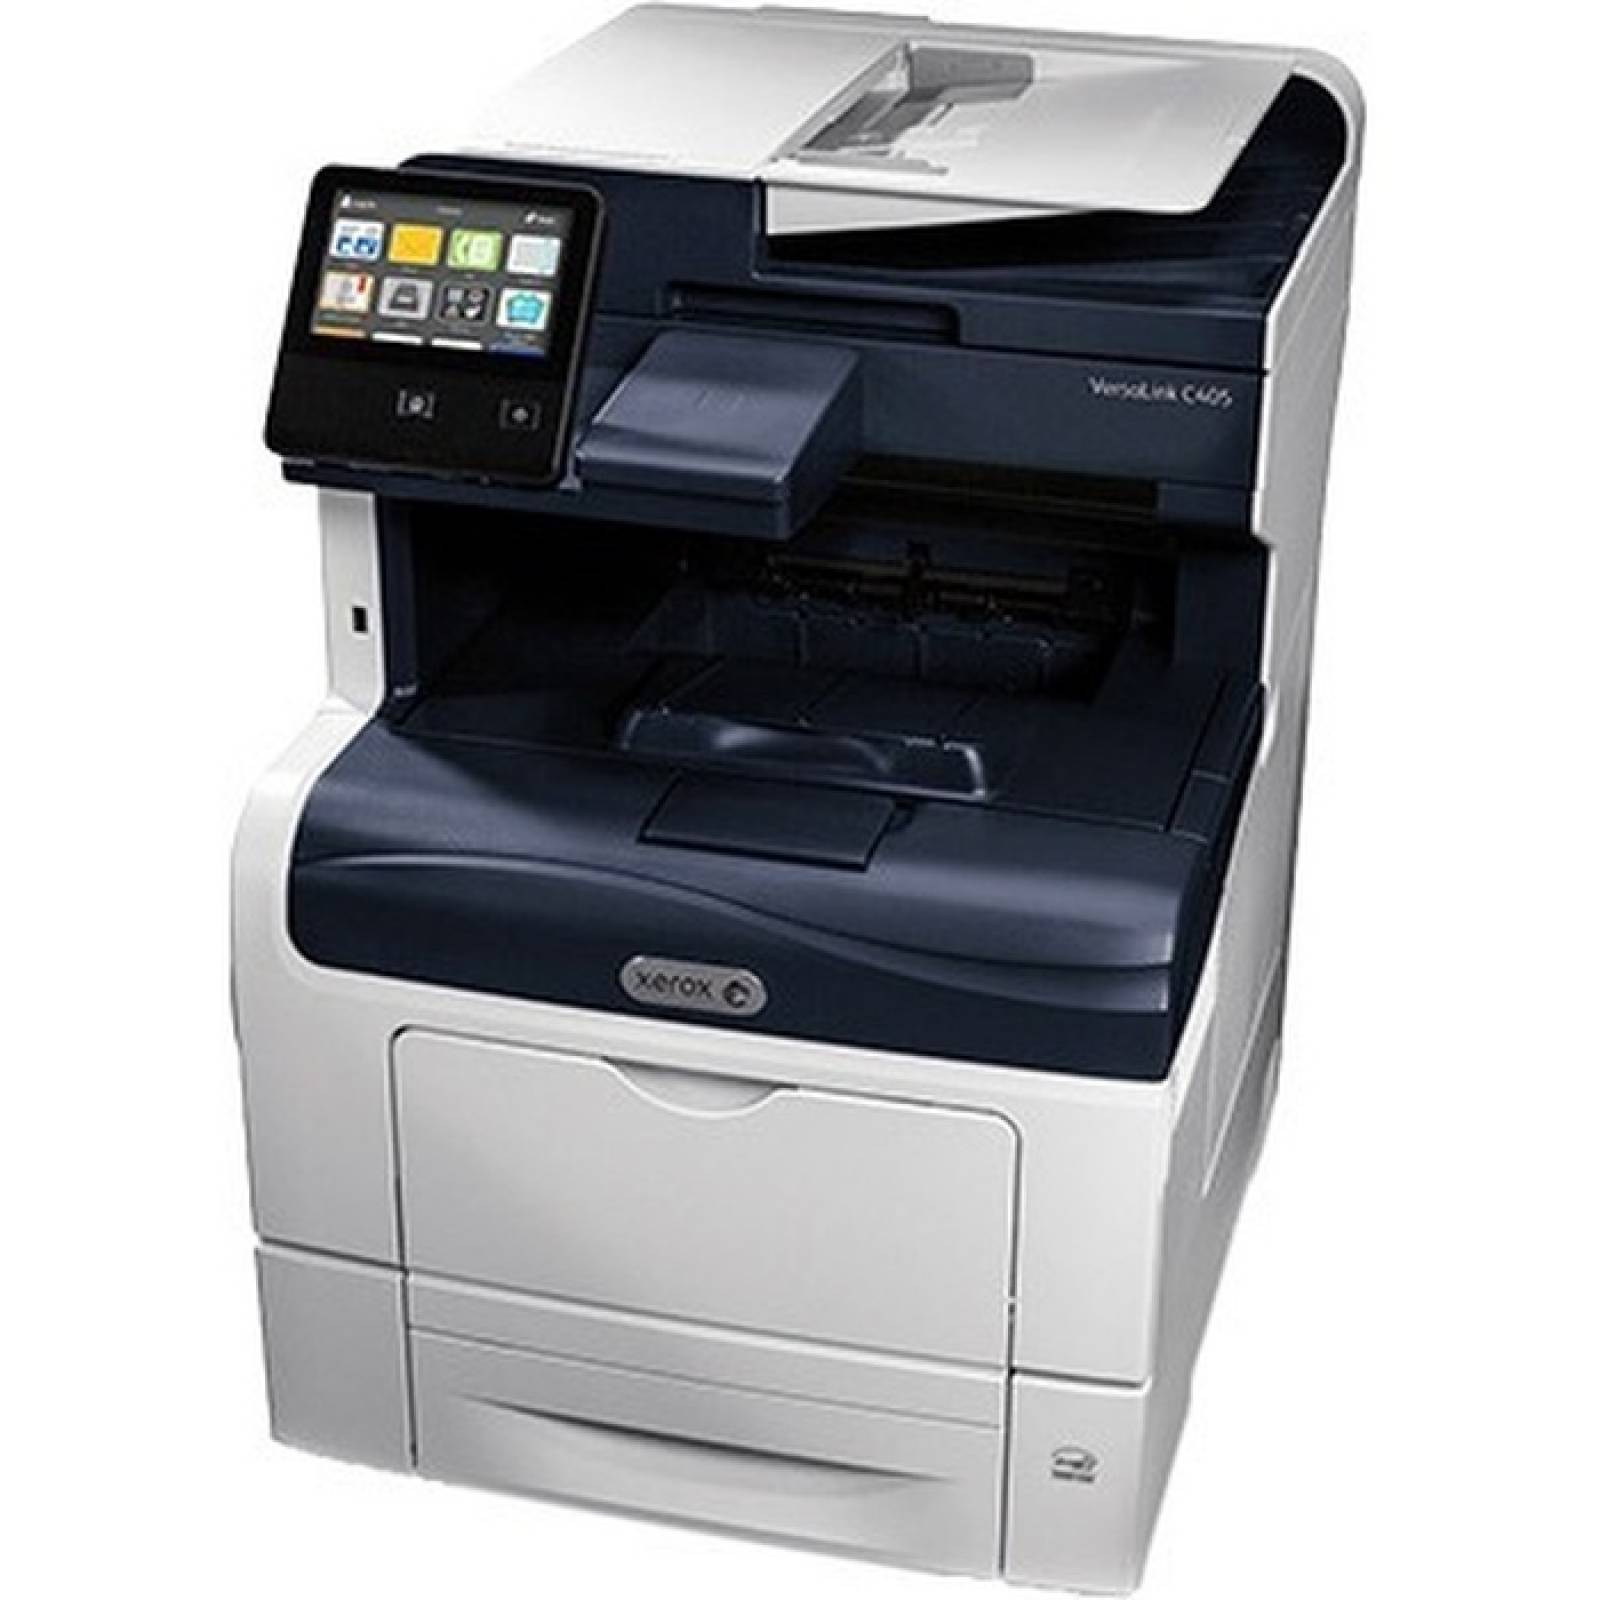 Impresora multifuncin lser Xerox VersaLink C405  DN  Color  Impresin en papel normal  Escritorio